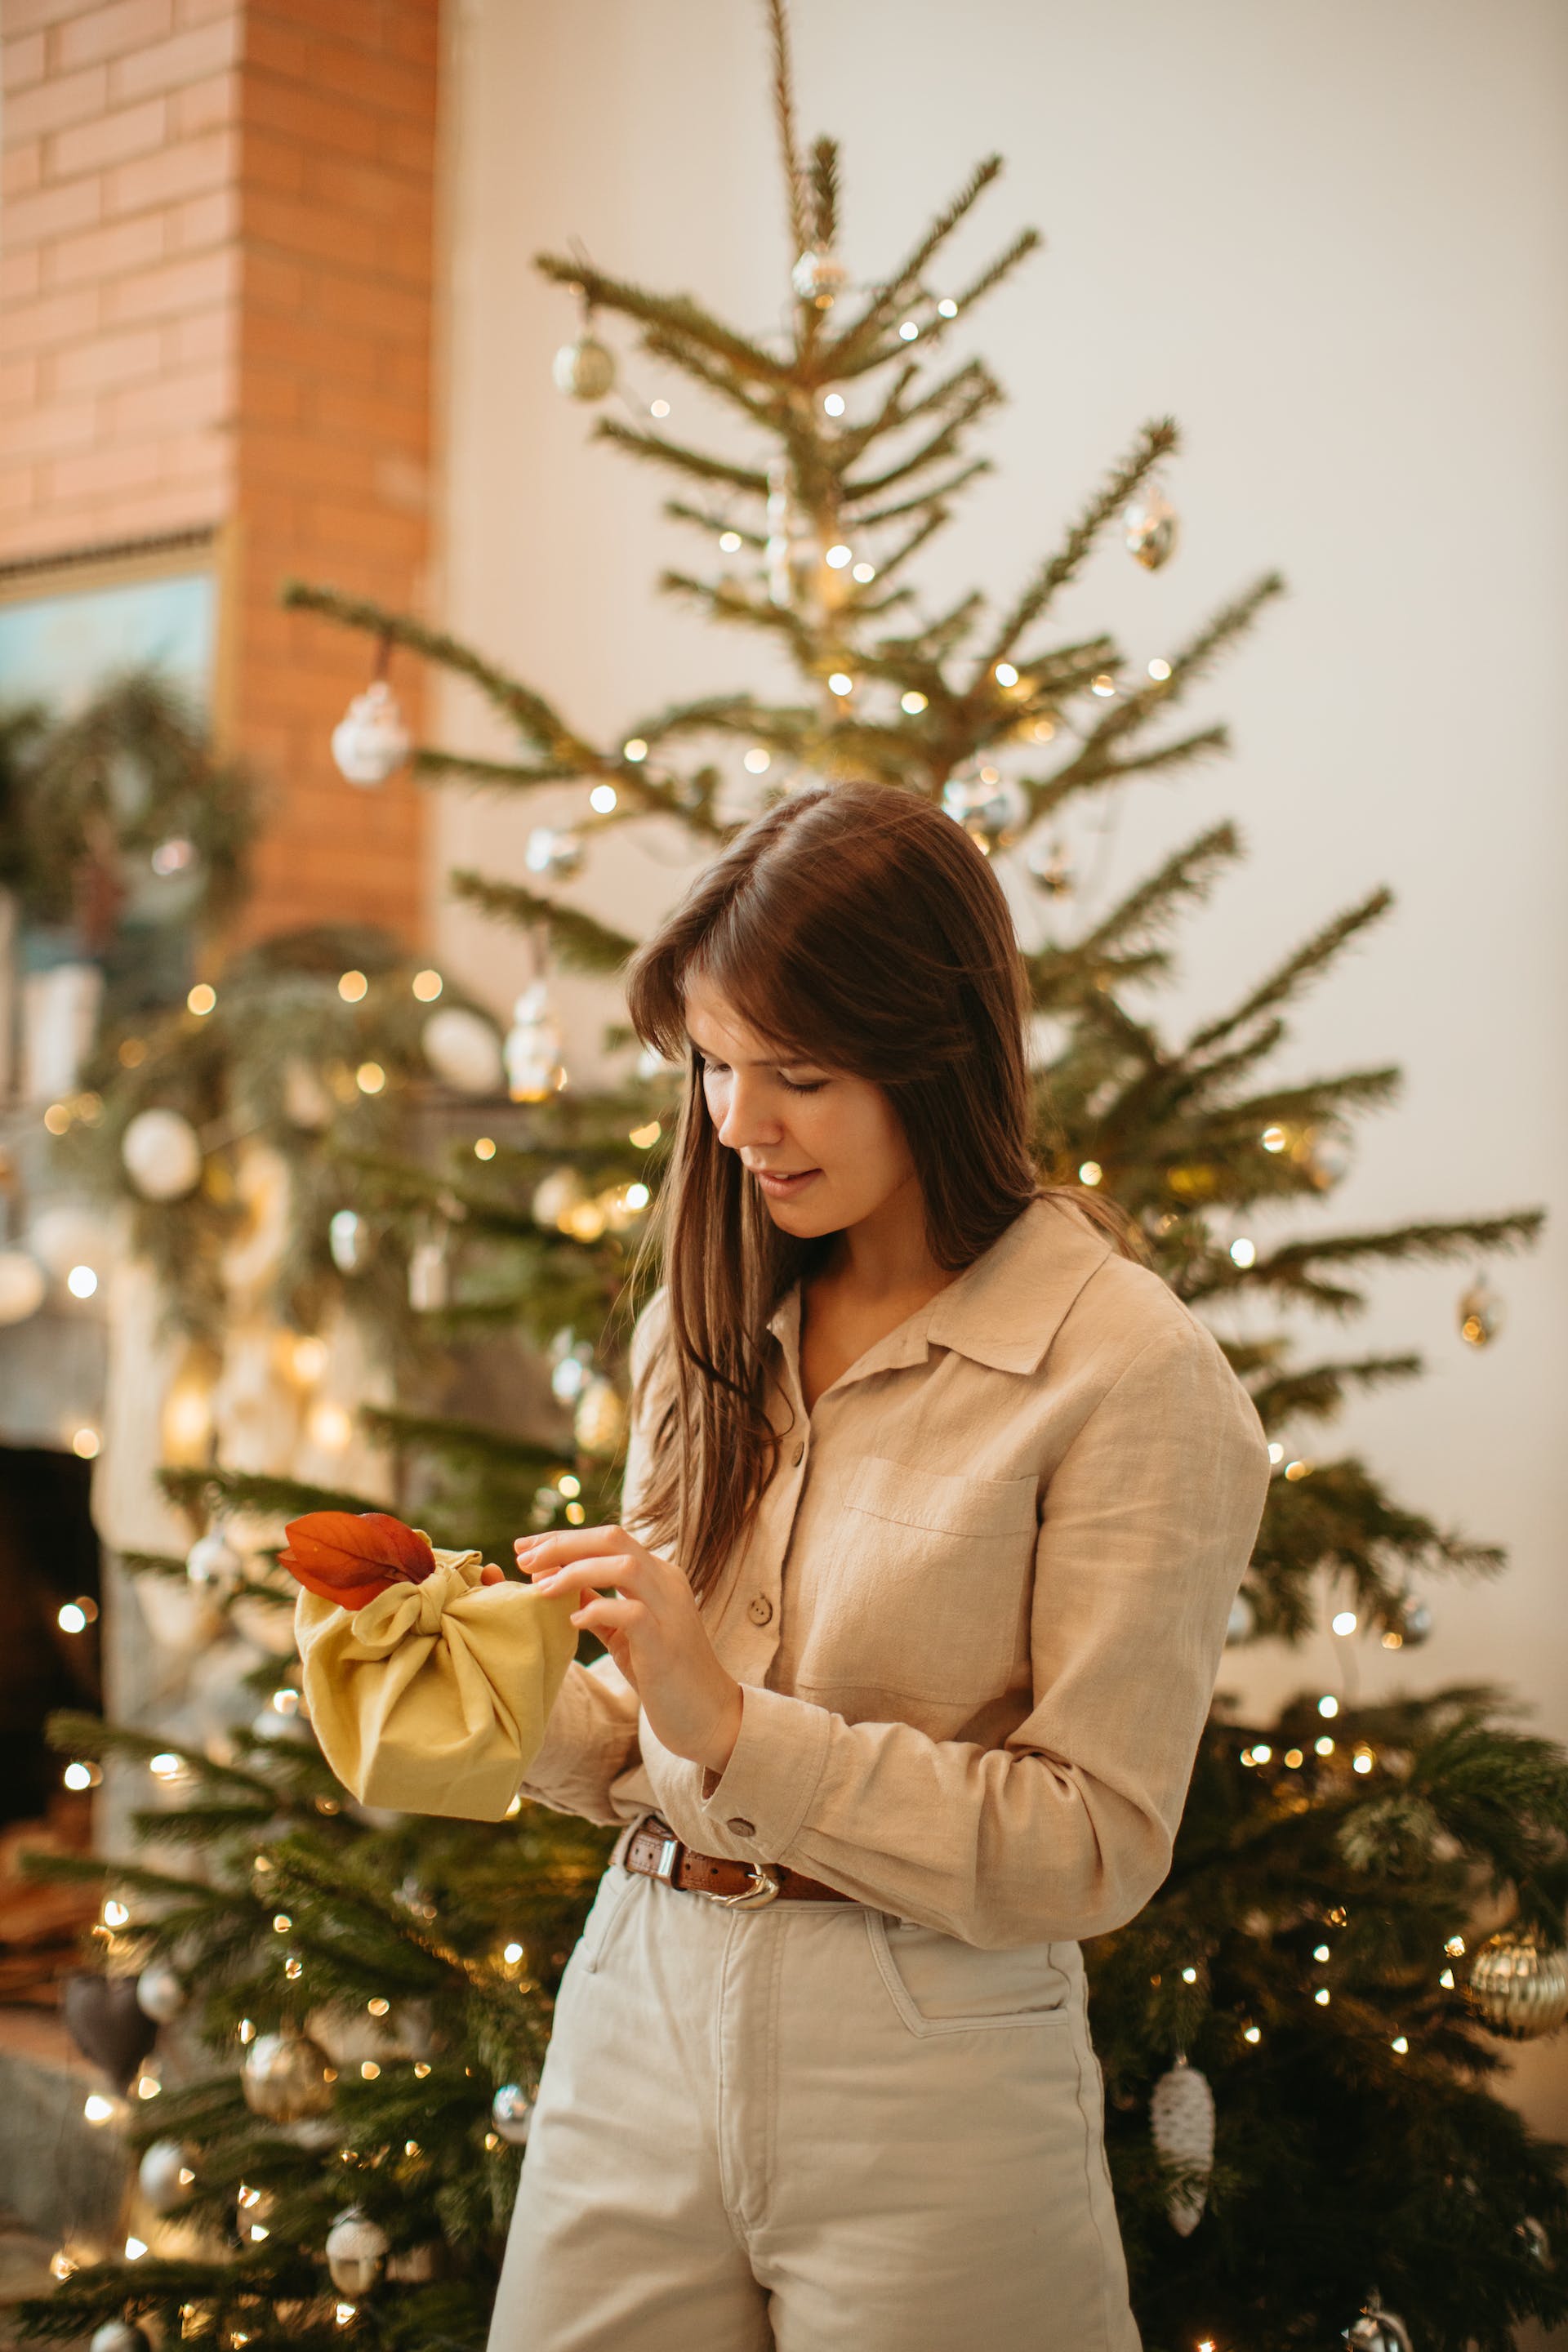 Eine Frau öffnet ihr Weihnachtsgeschenk | Quelle: Pexels